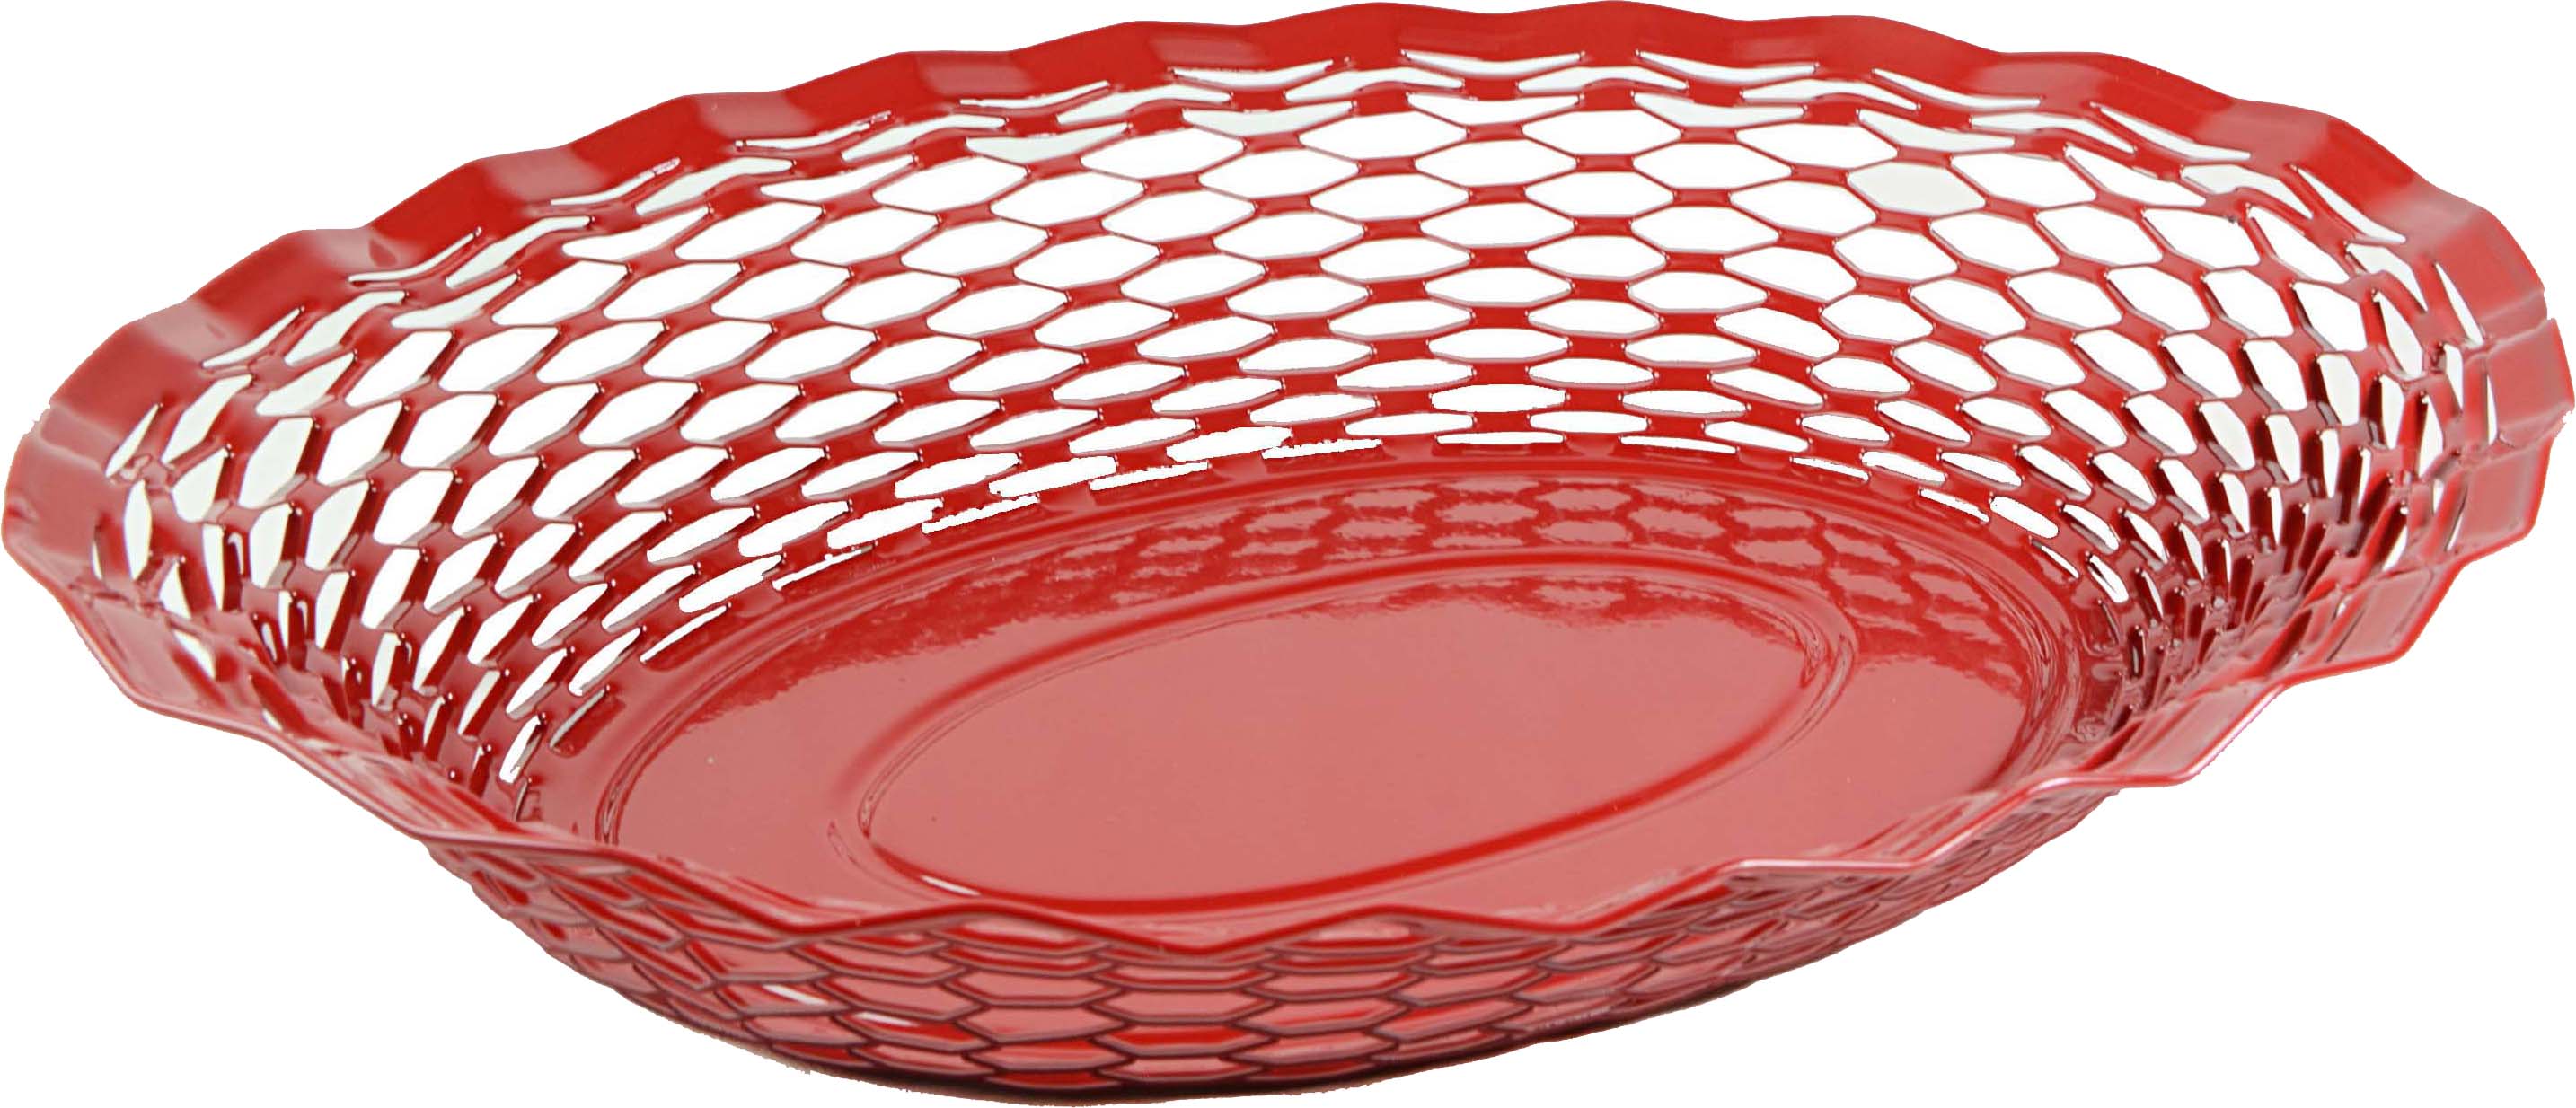 Corbeille à pain ovale rouge en inox 30 x 24 cm